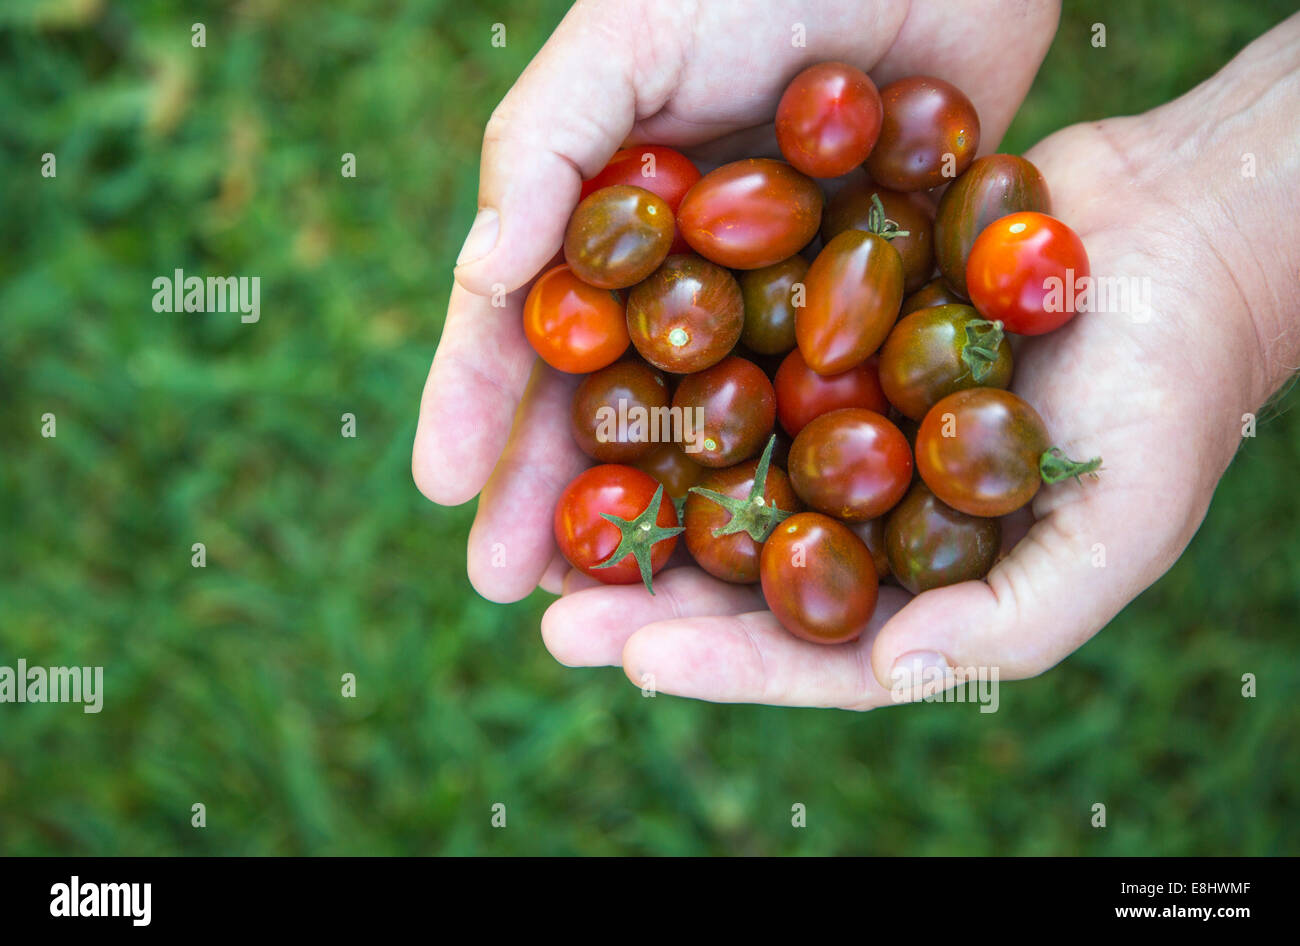 Juste pris des tomates cerise, illustré à droite, tenue à la main contre l'herbe Banque D'Images